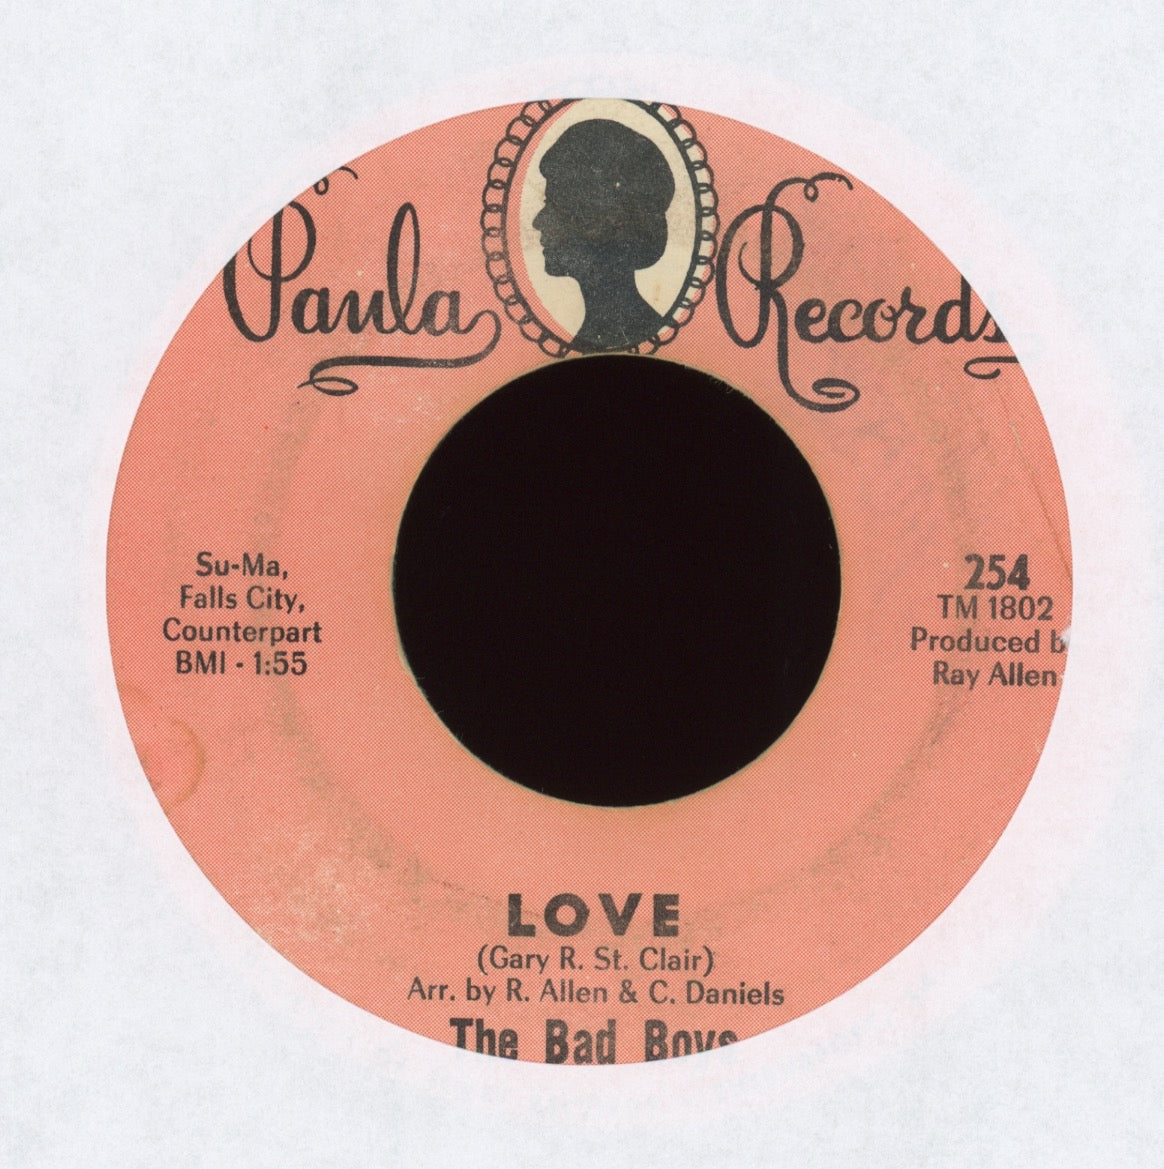 The Bad Boys - Love on Paula